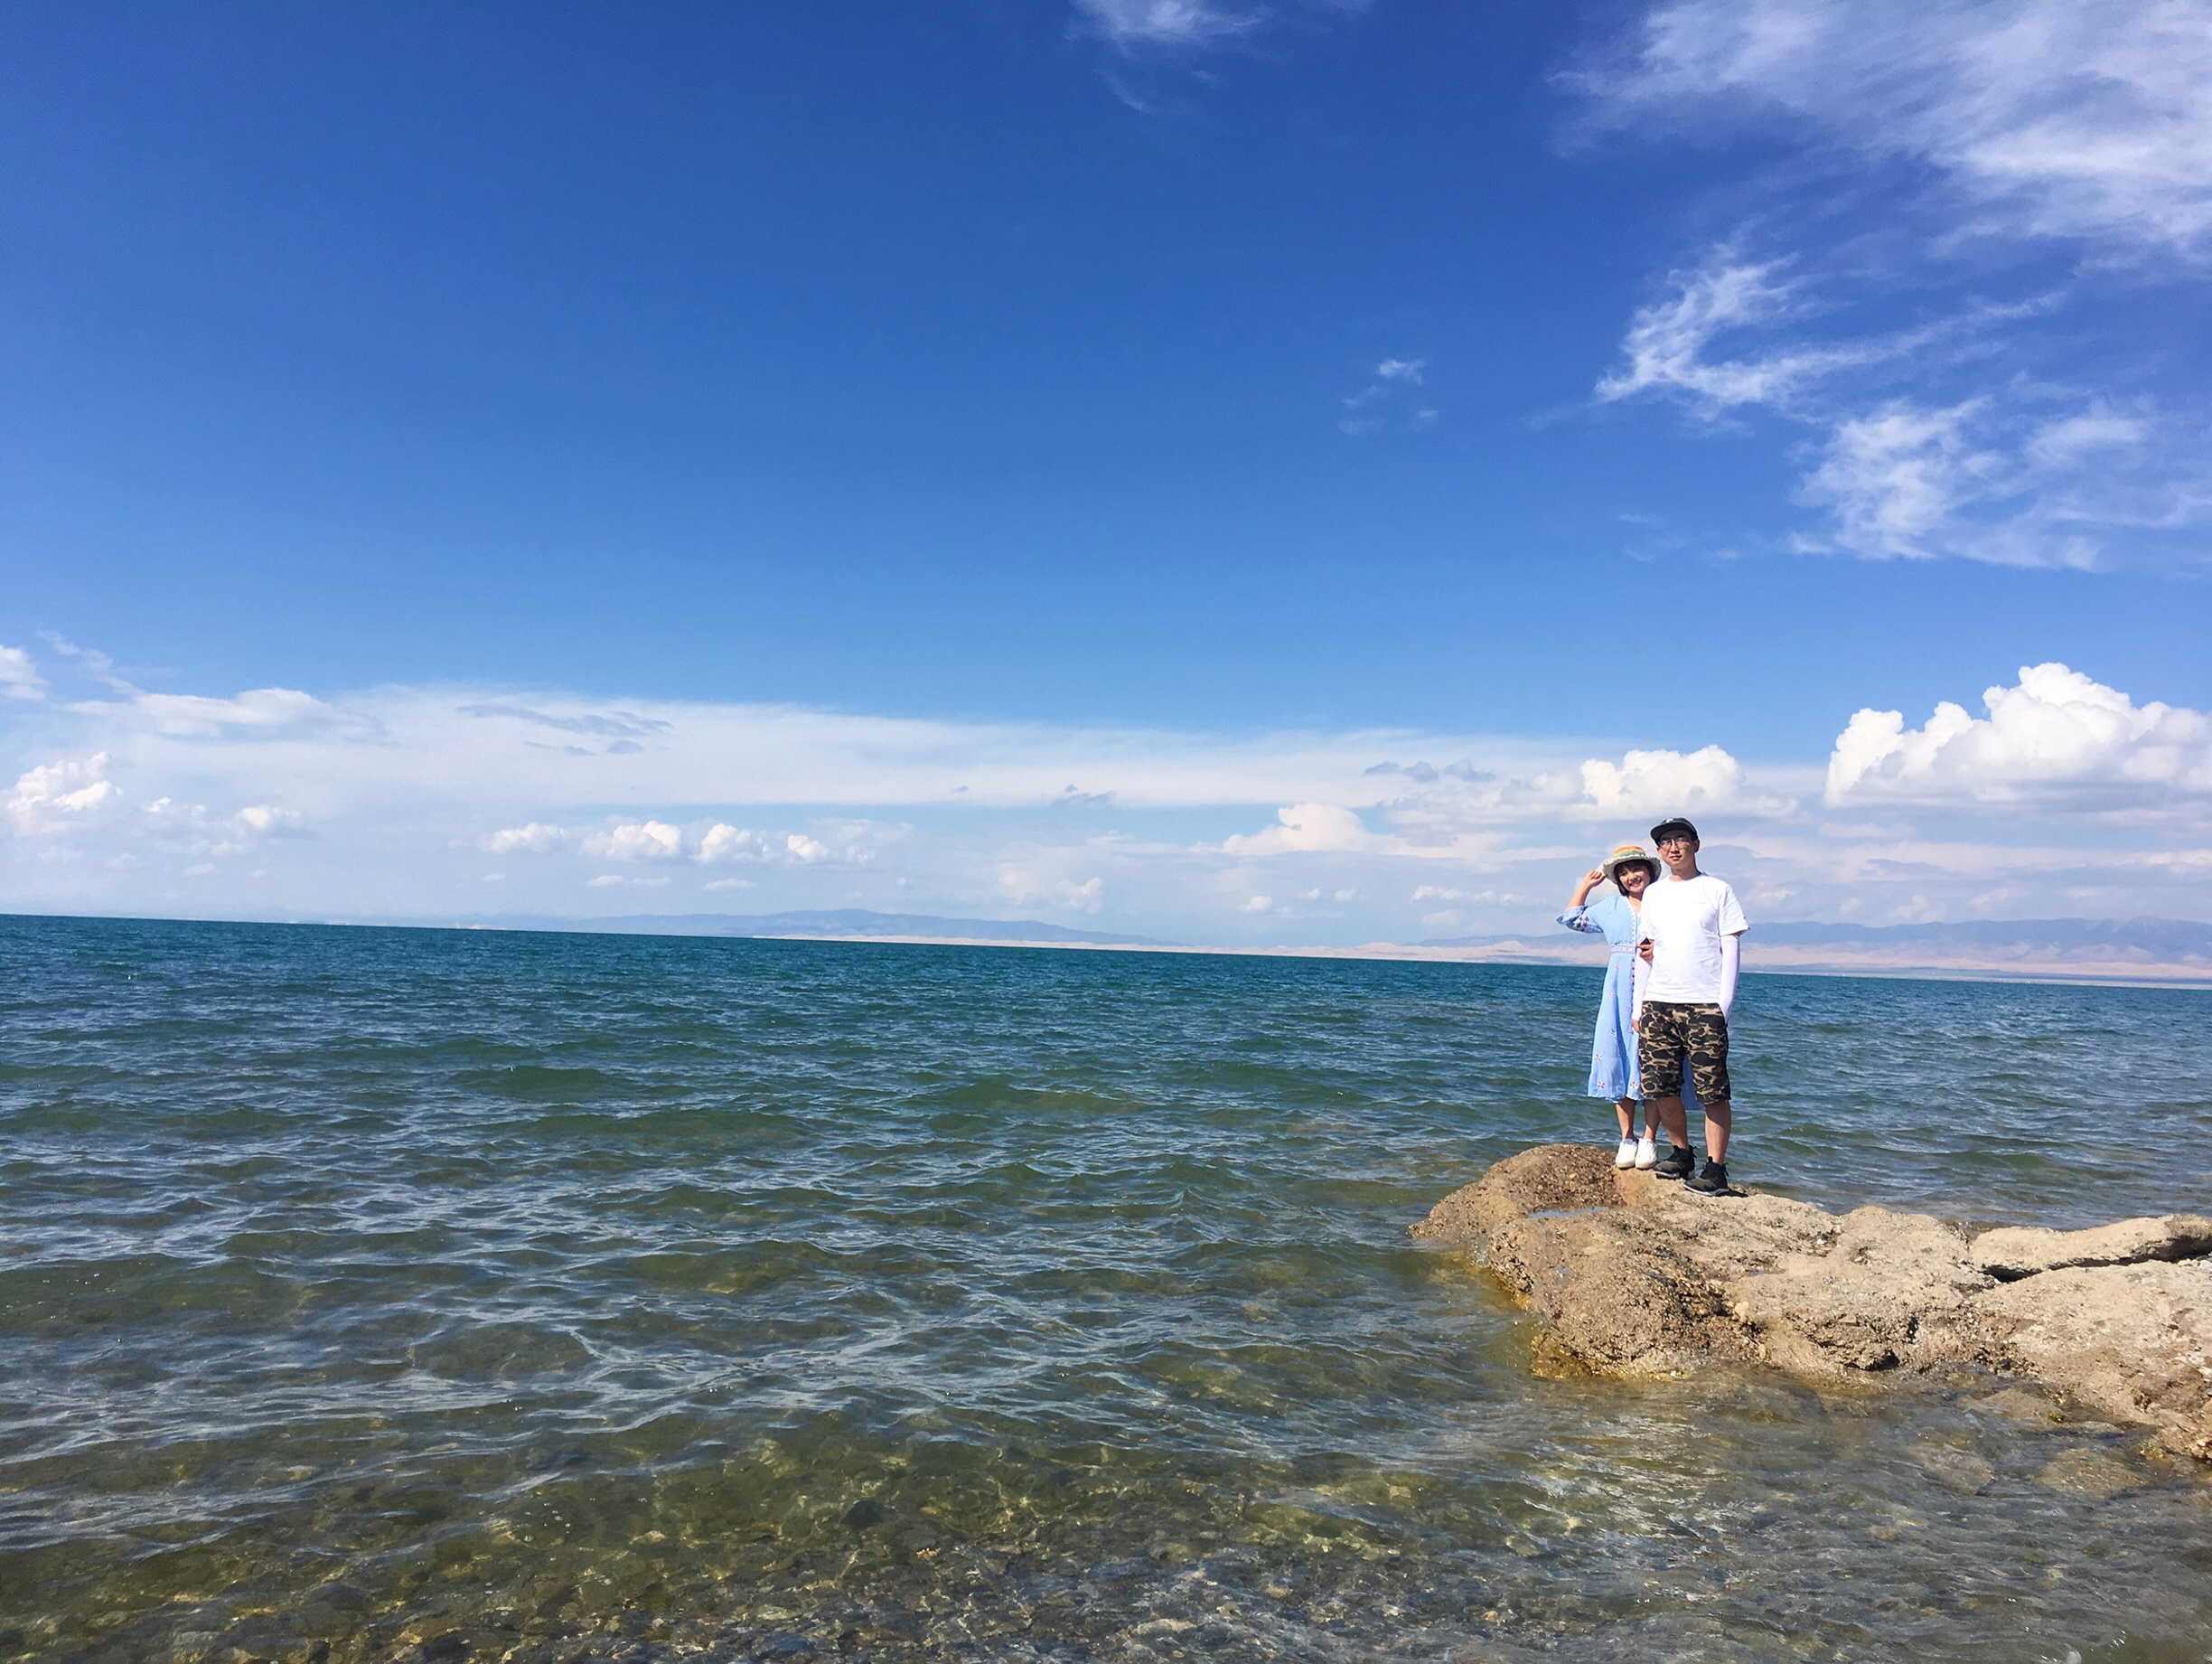 【携程攻略】青海湖青海湖适合情侣出游旅游吗,青海湖